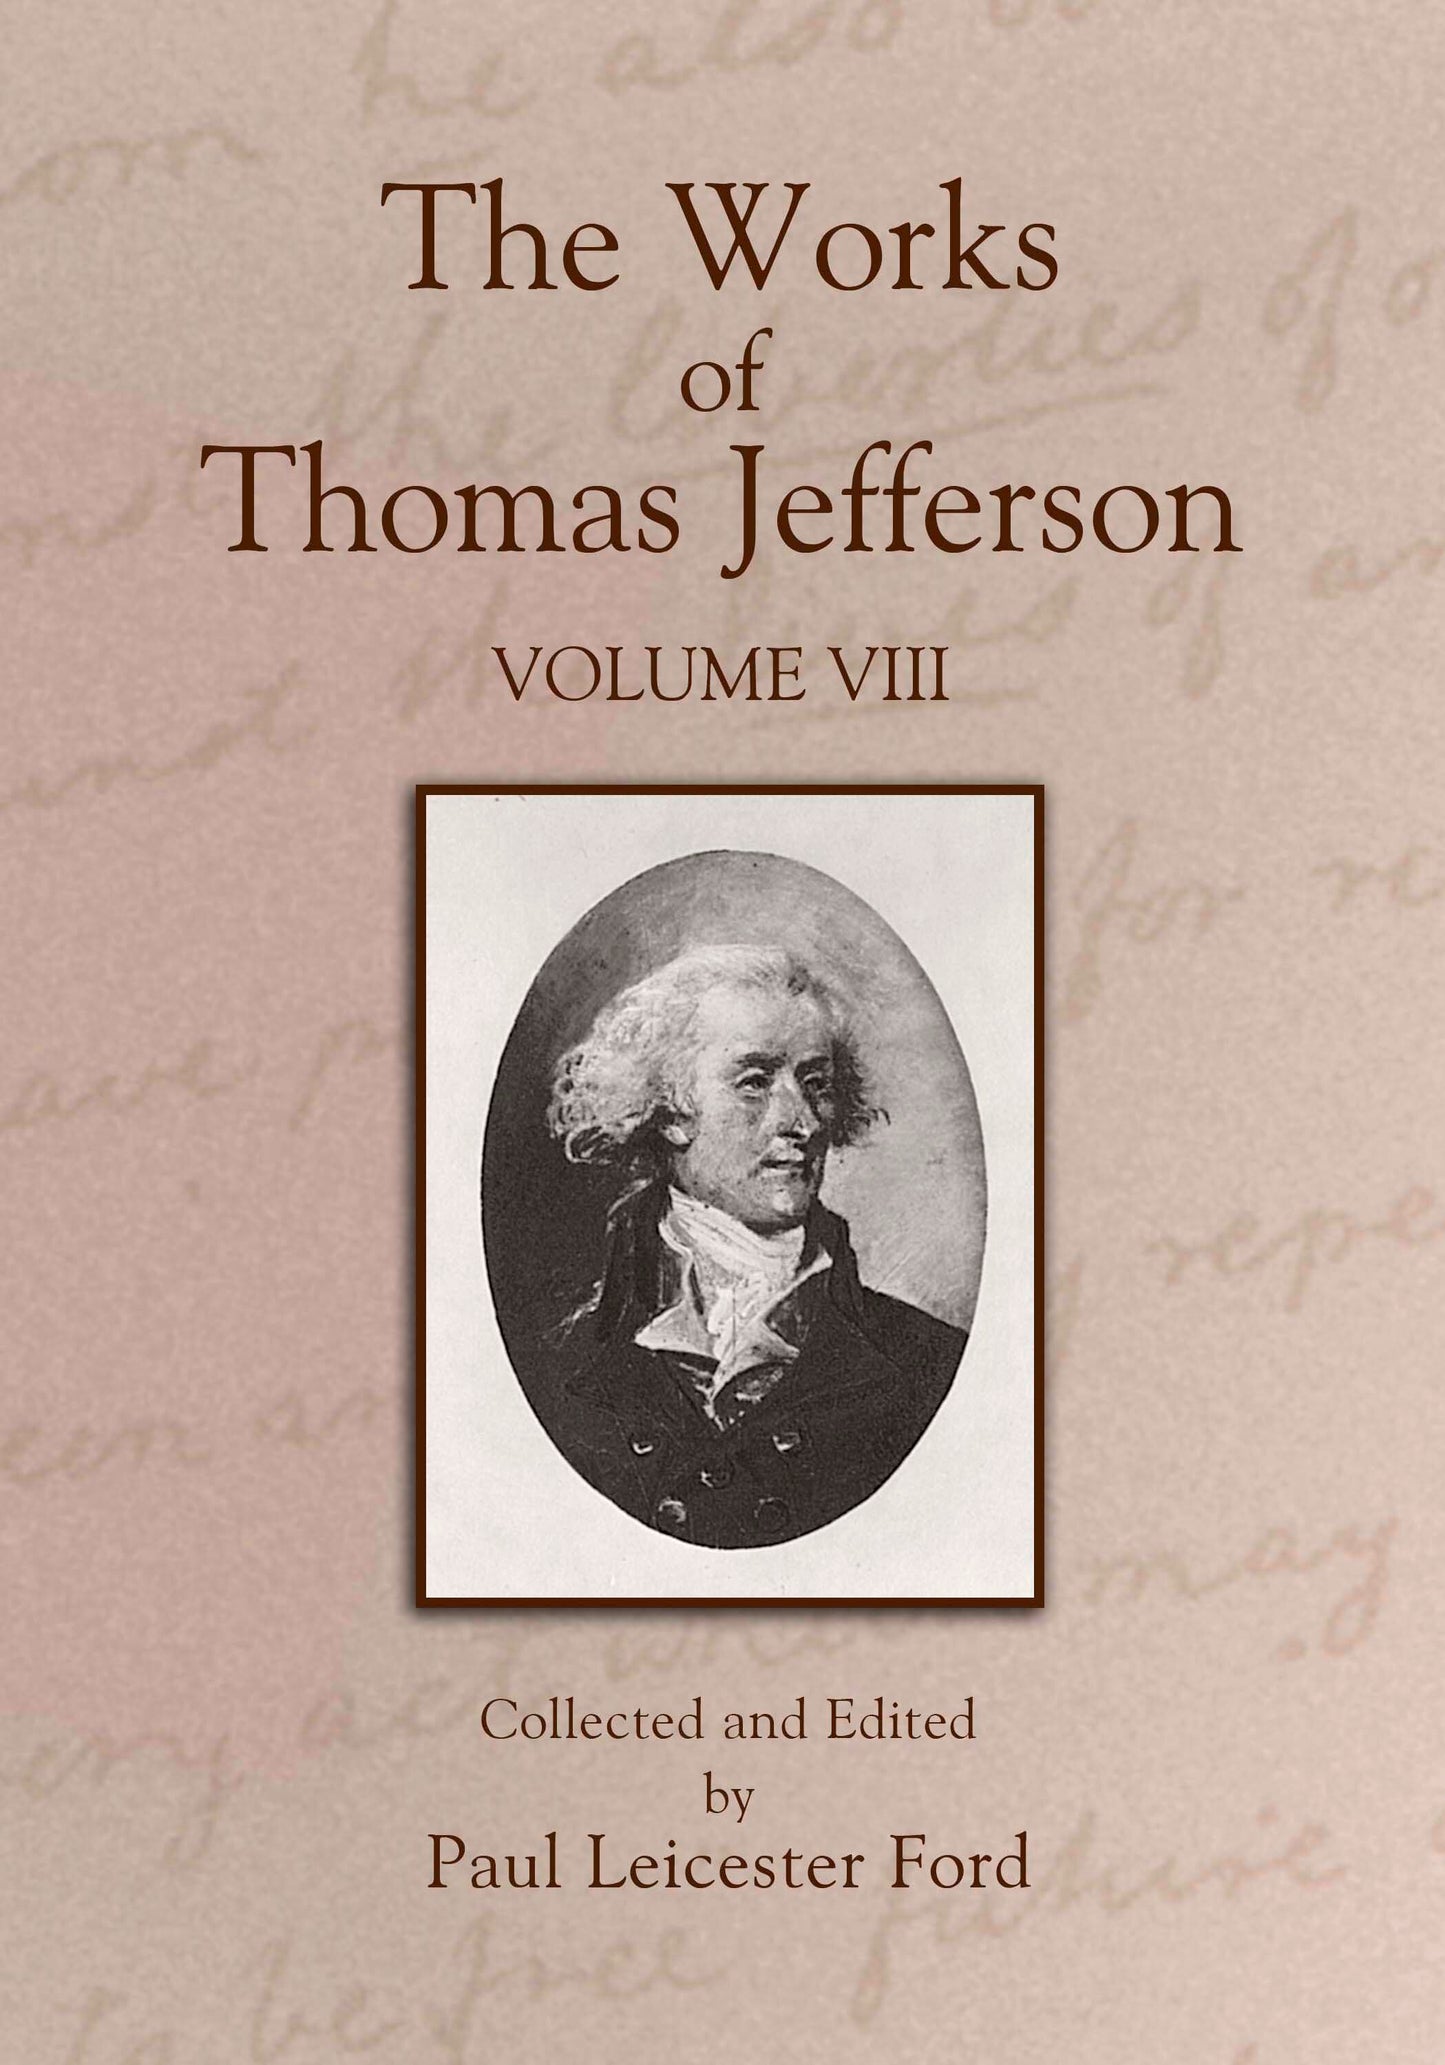 The Works of Thomas Jefferson: Volume VIII